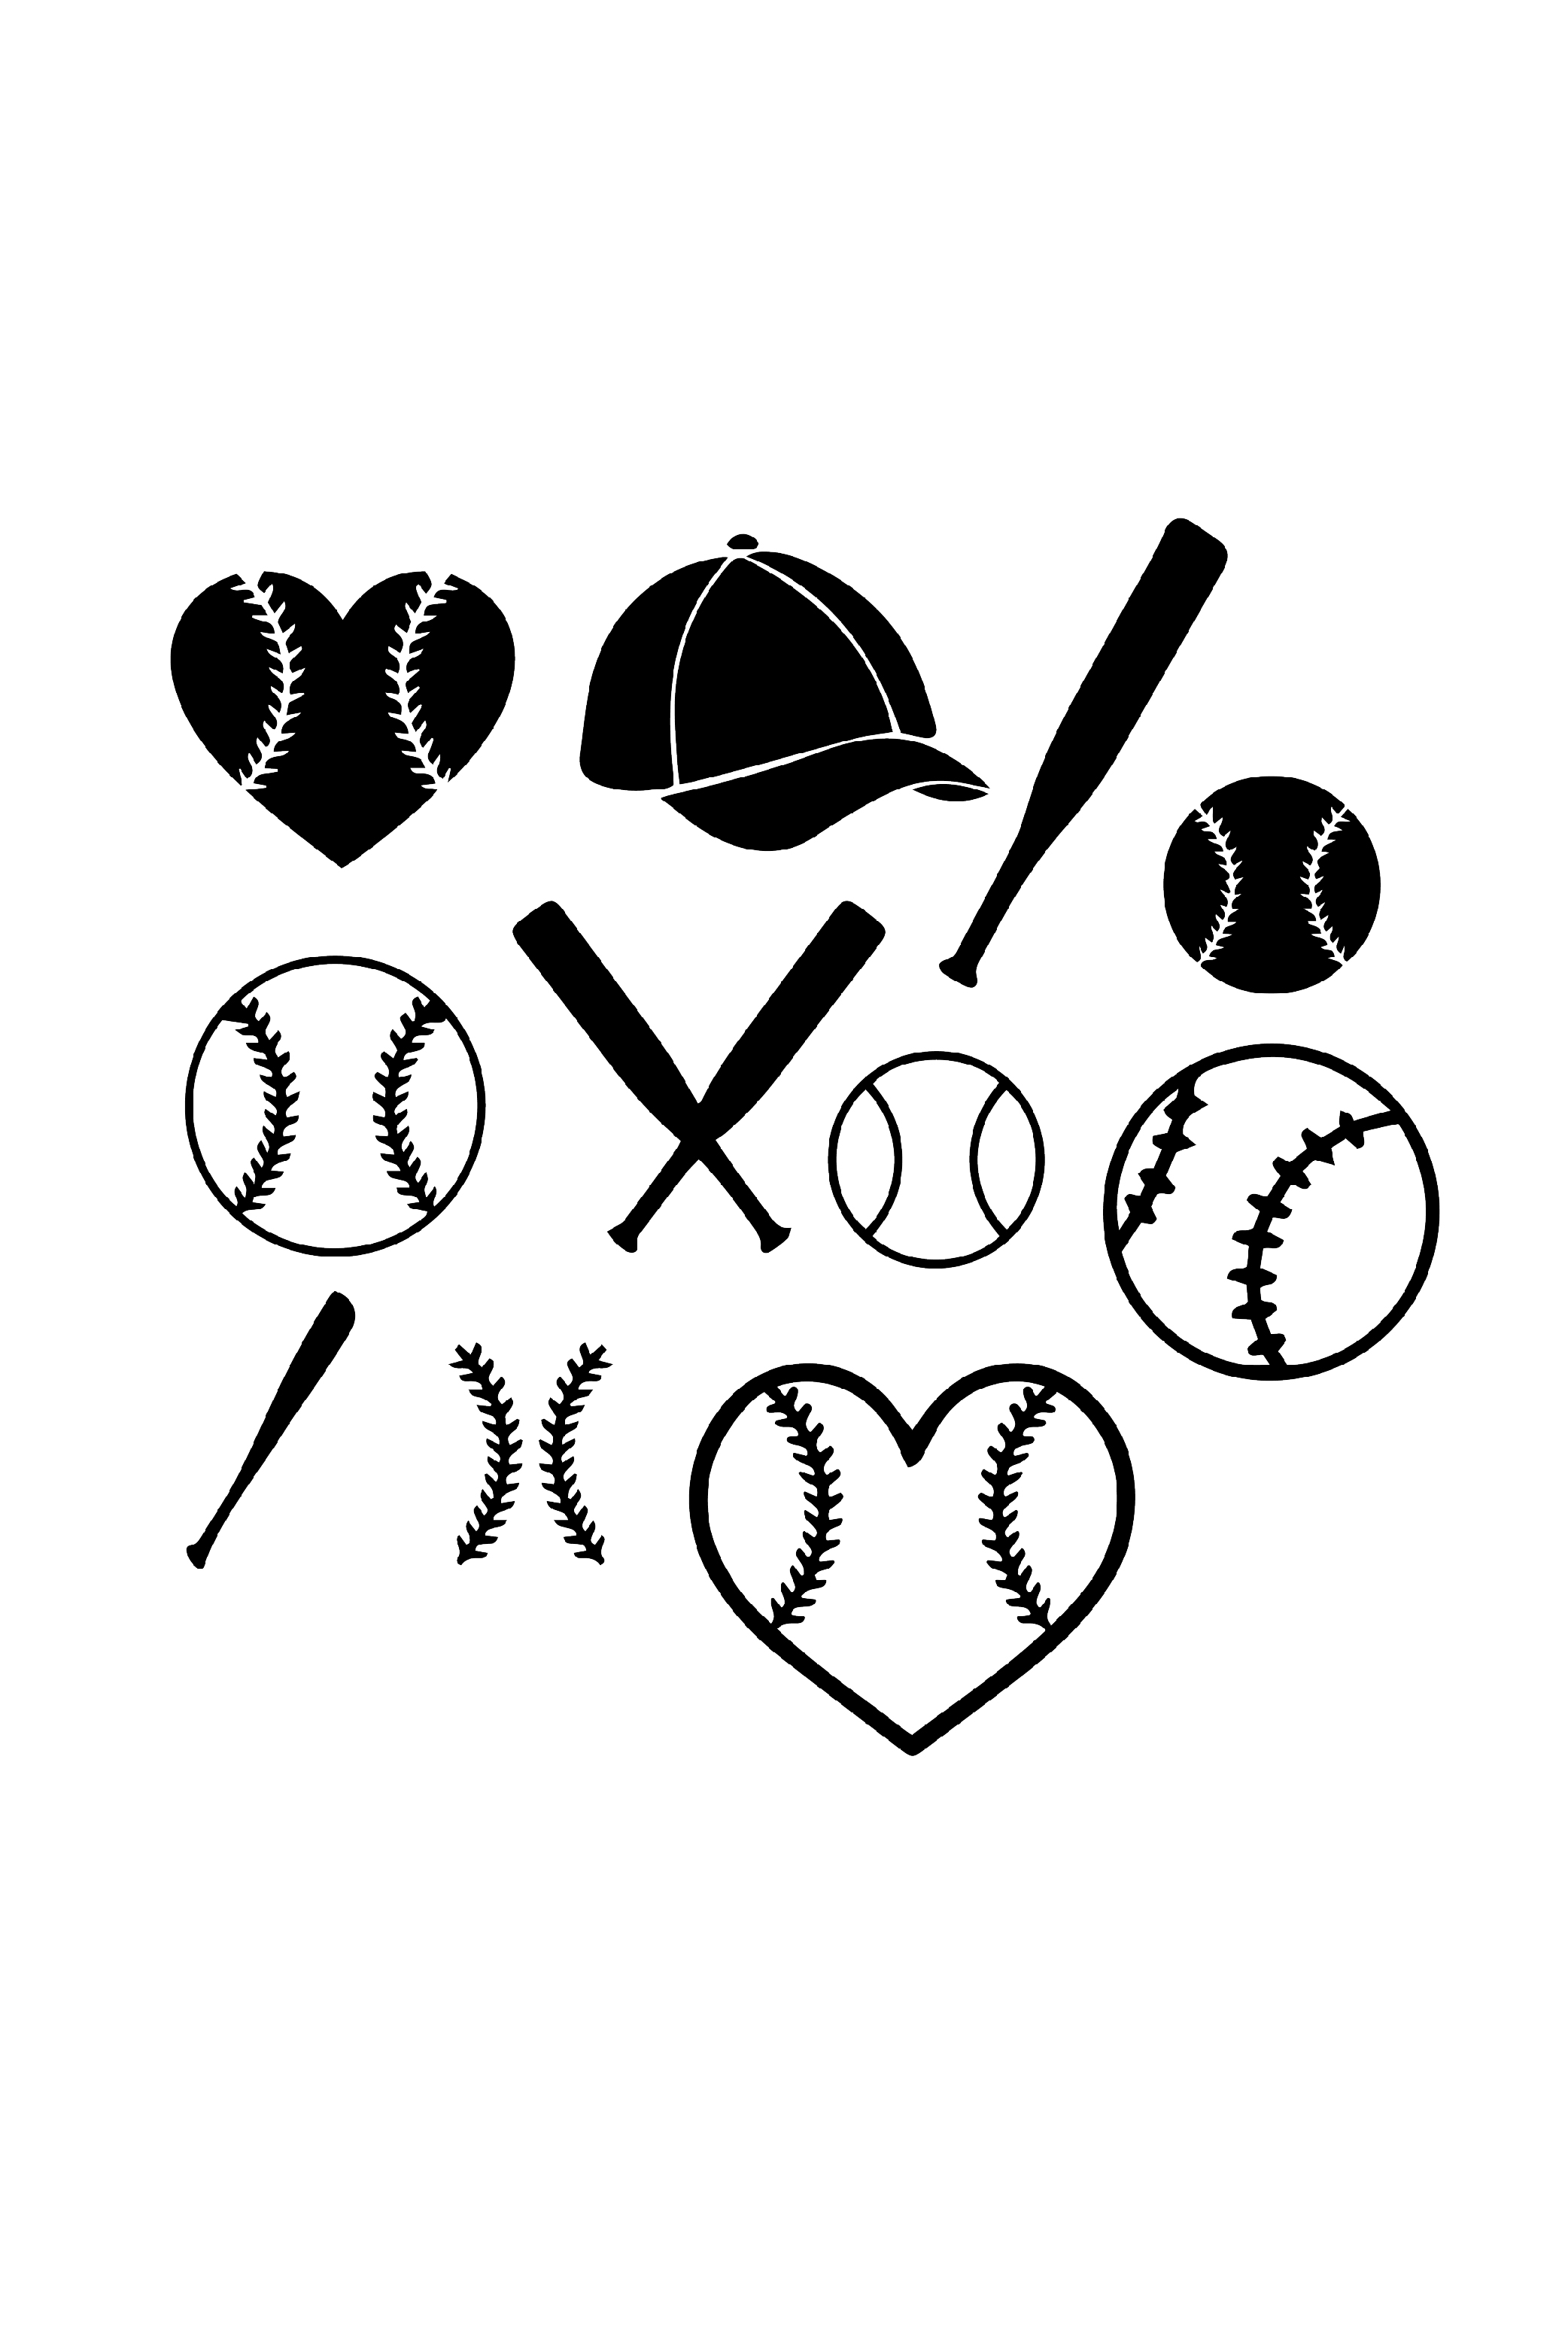 Baseball Design Bundle (SVG - PNG - JPG - EPS ) Included pinterest preview image.